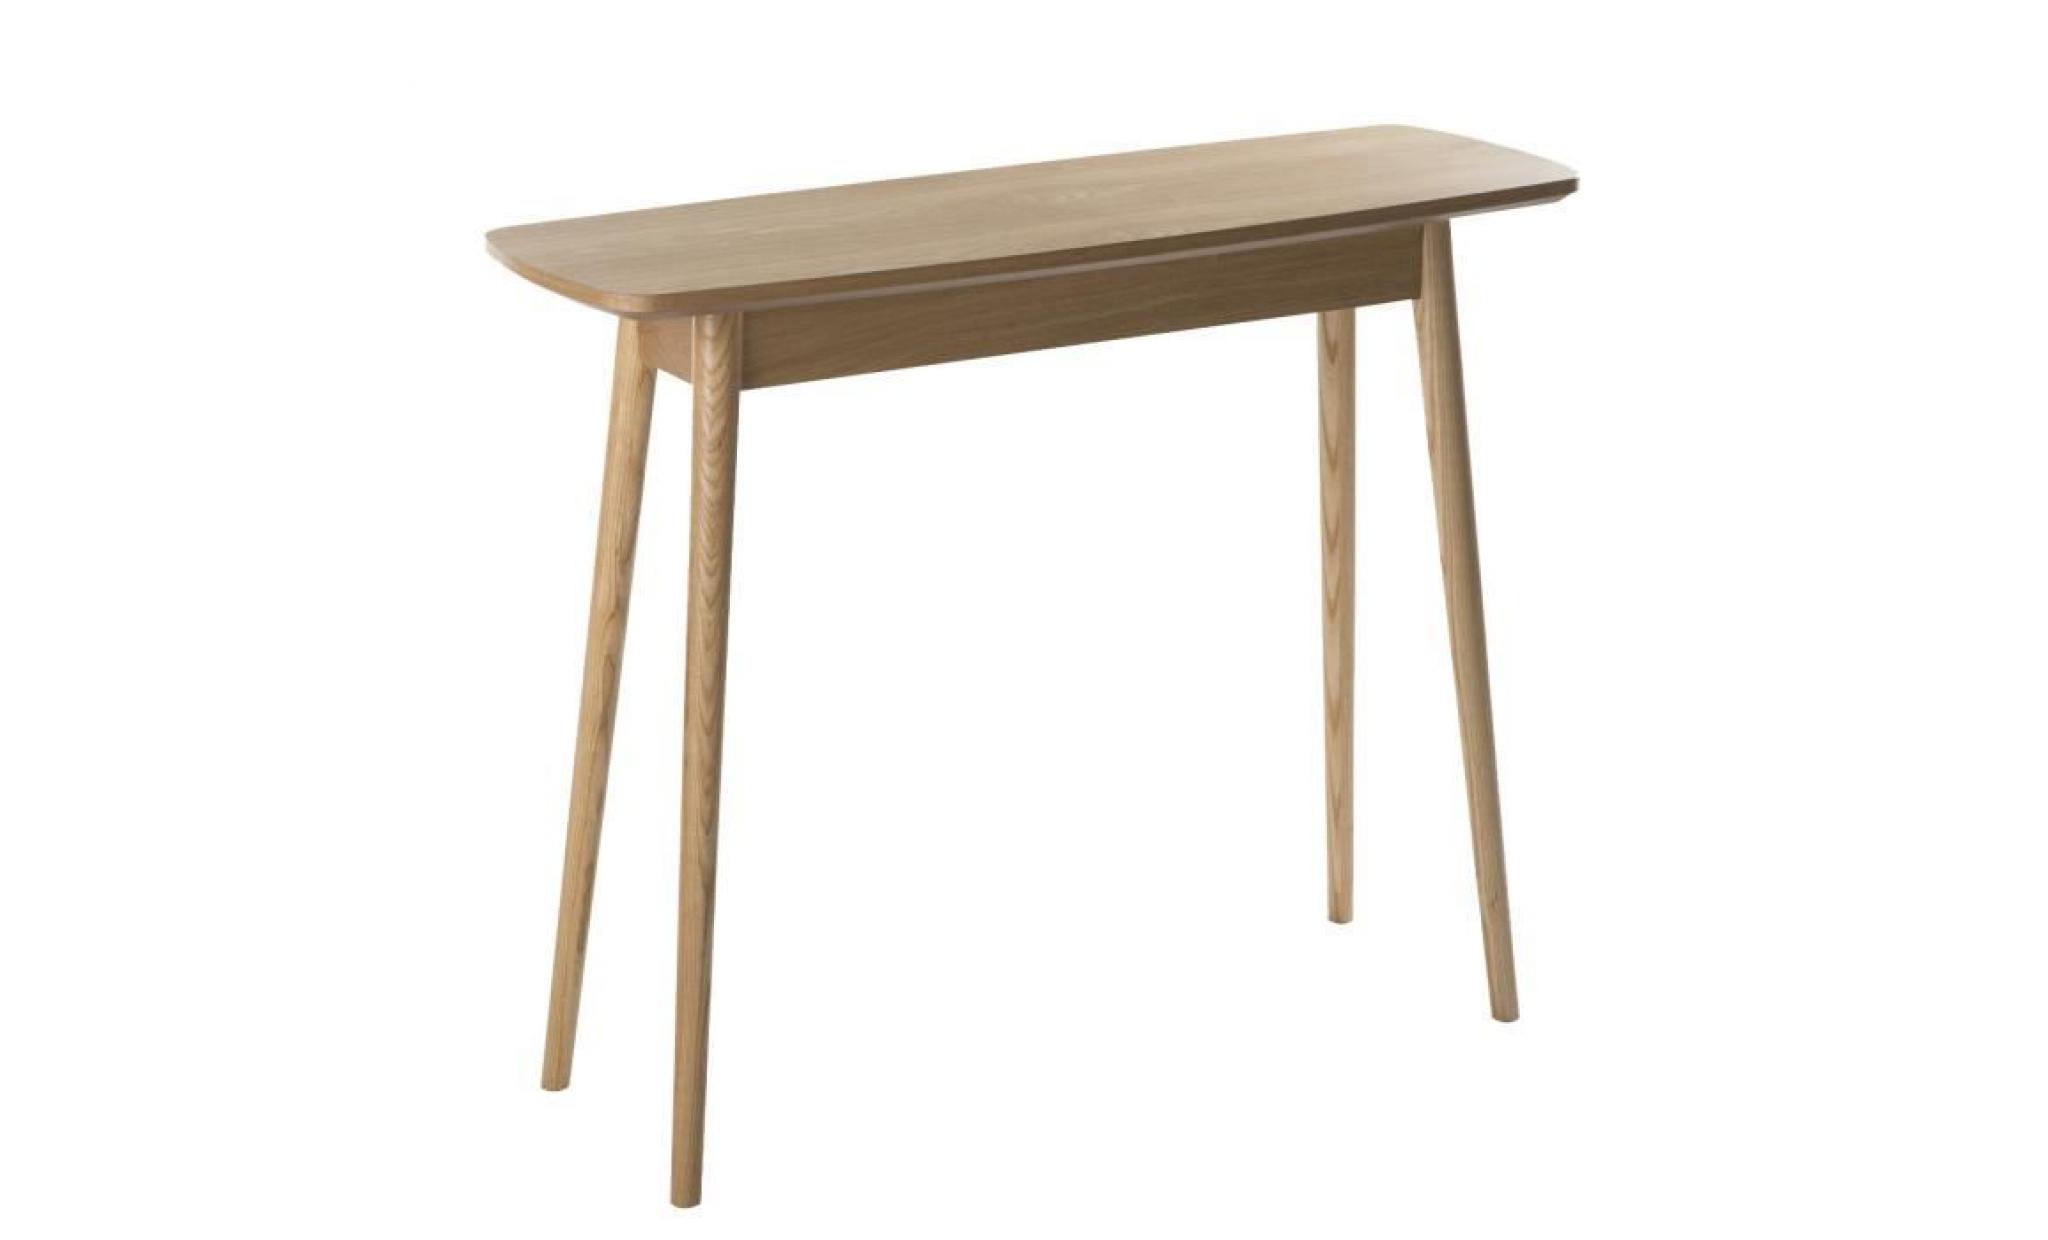 meuble console lerka en bois design scandinave pieds biseautés h 75cm x l 120cm x l 55cm marron